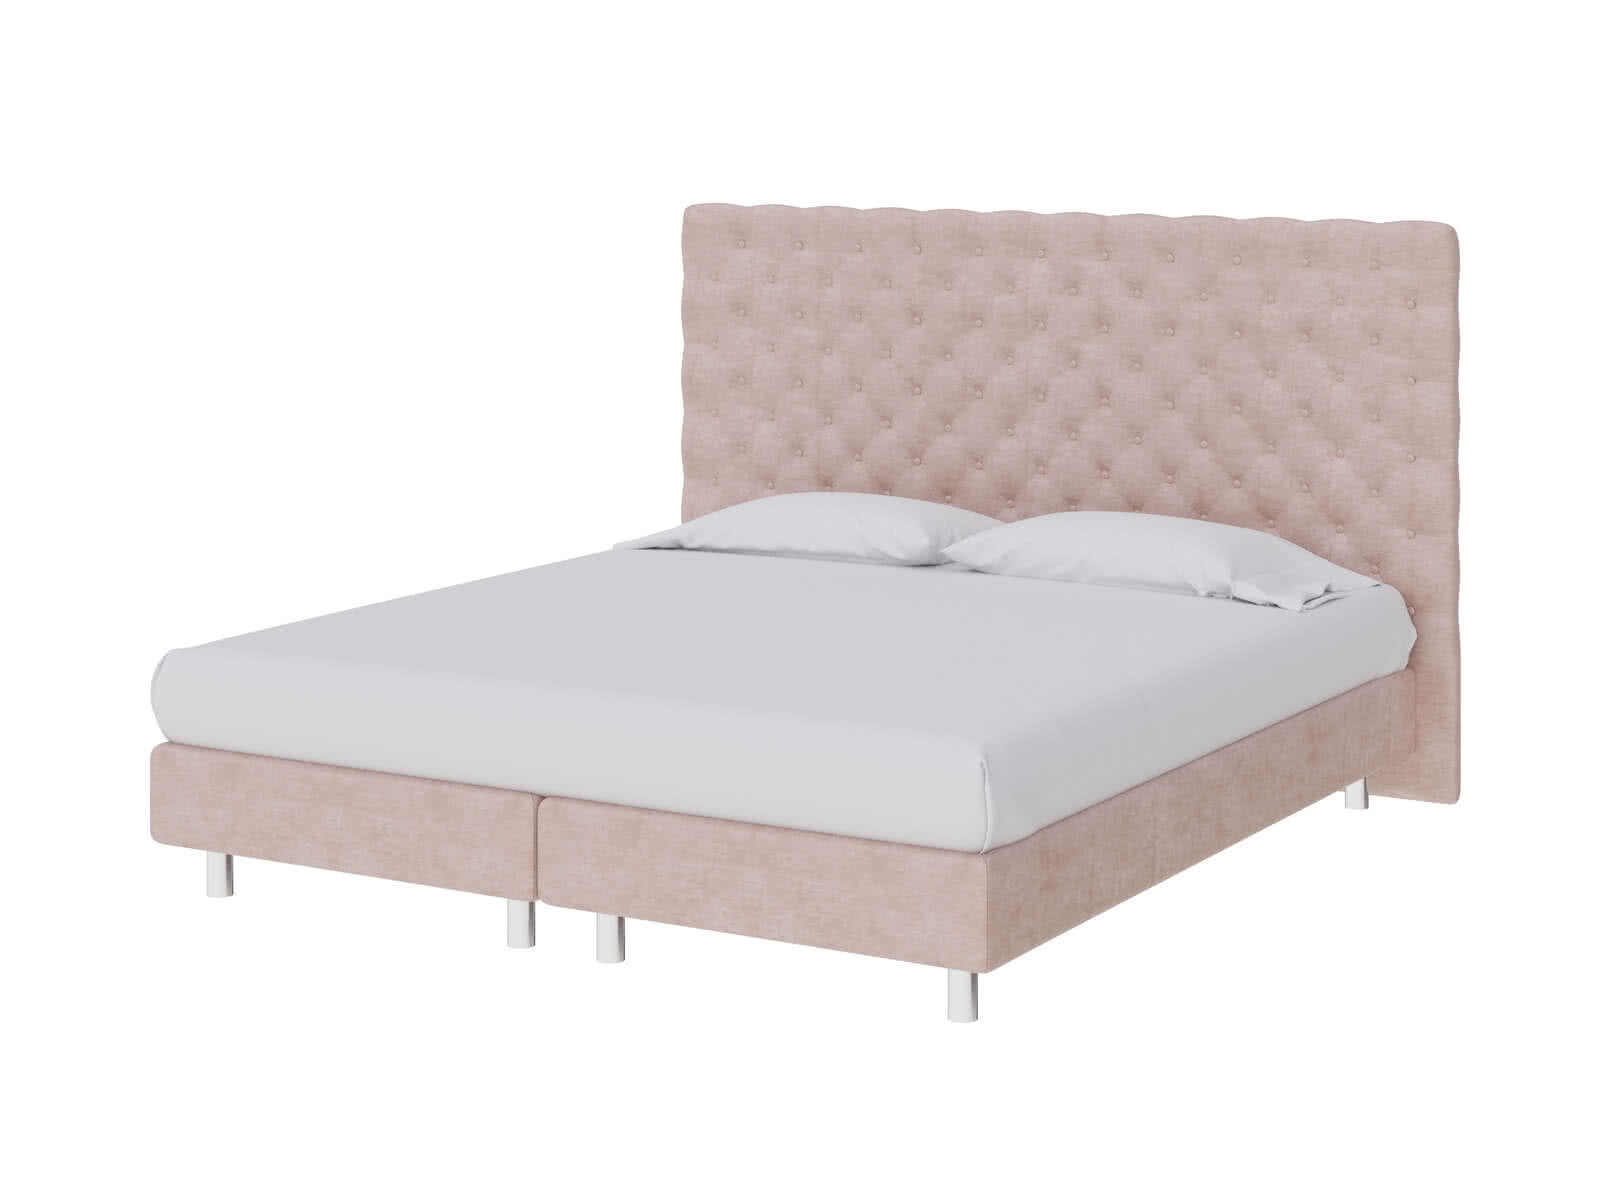 Кровать ProSon Europe Paris Elite 90 х 200 см Лофти Тауп от производителя — цены фабрики, доставка